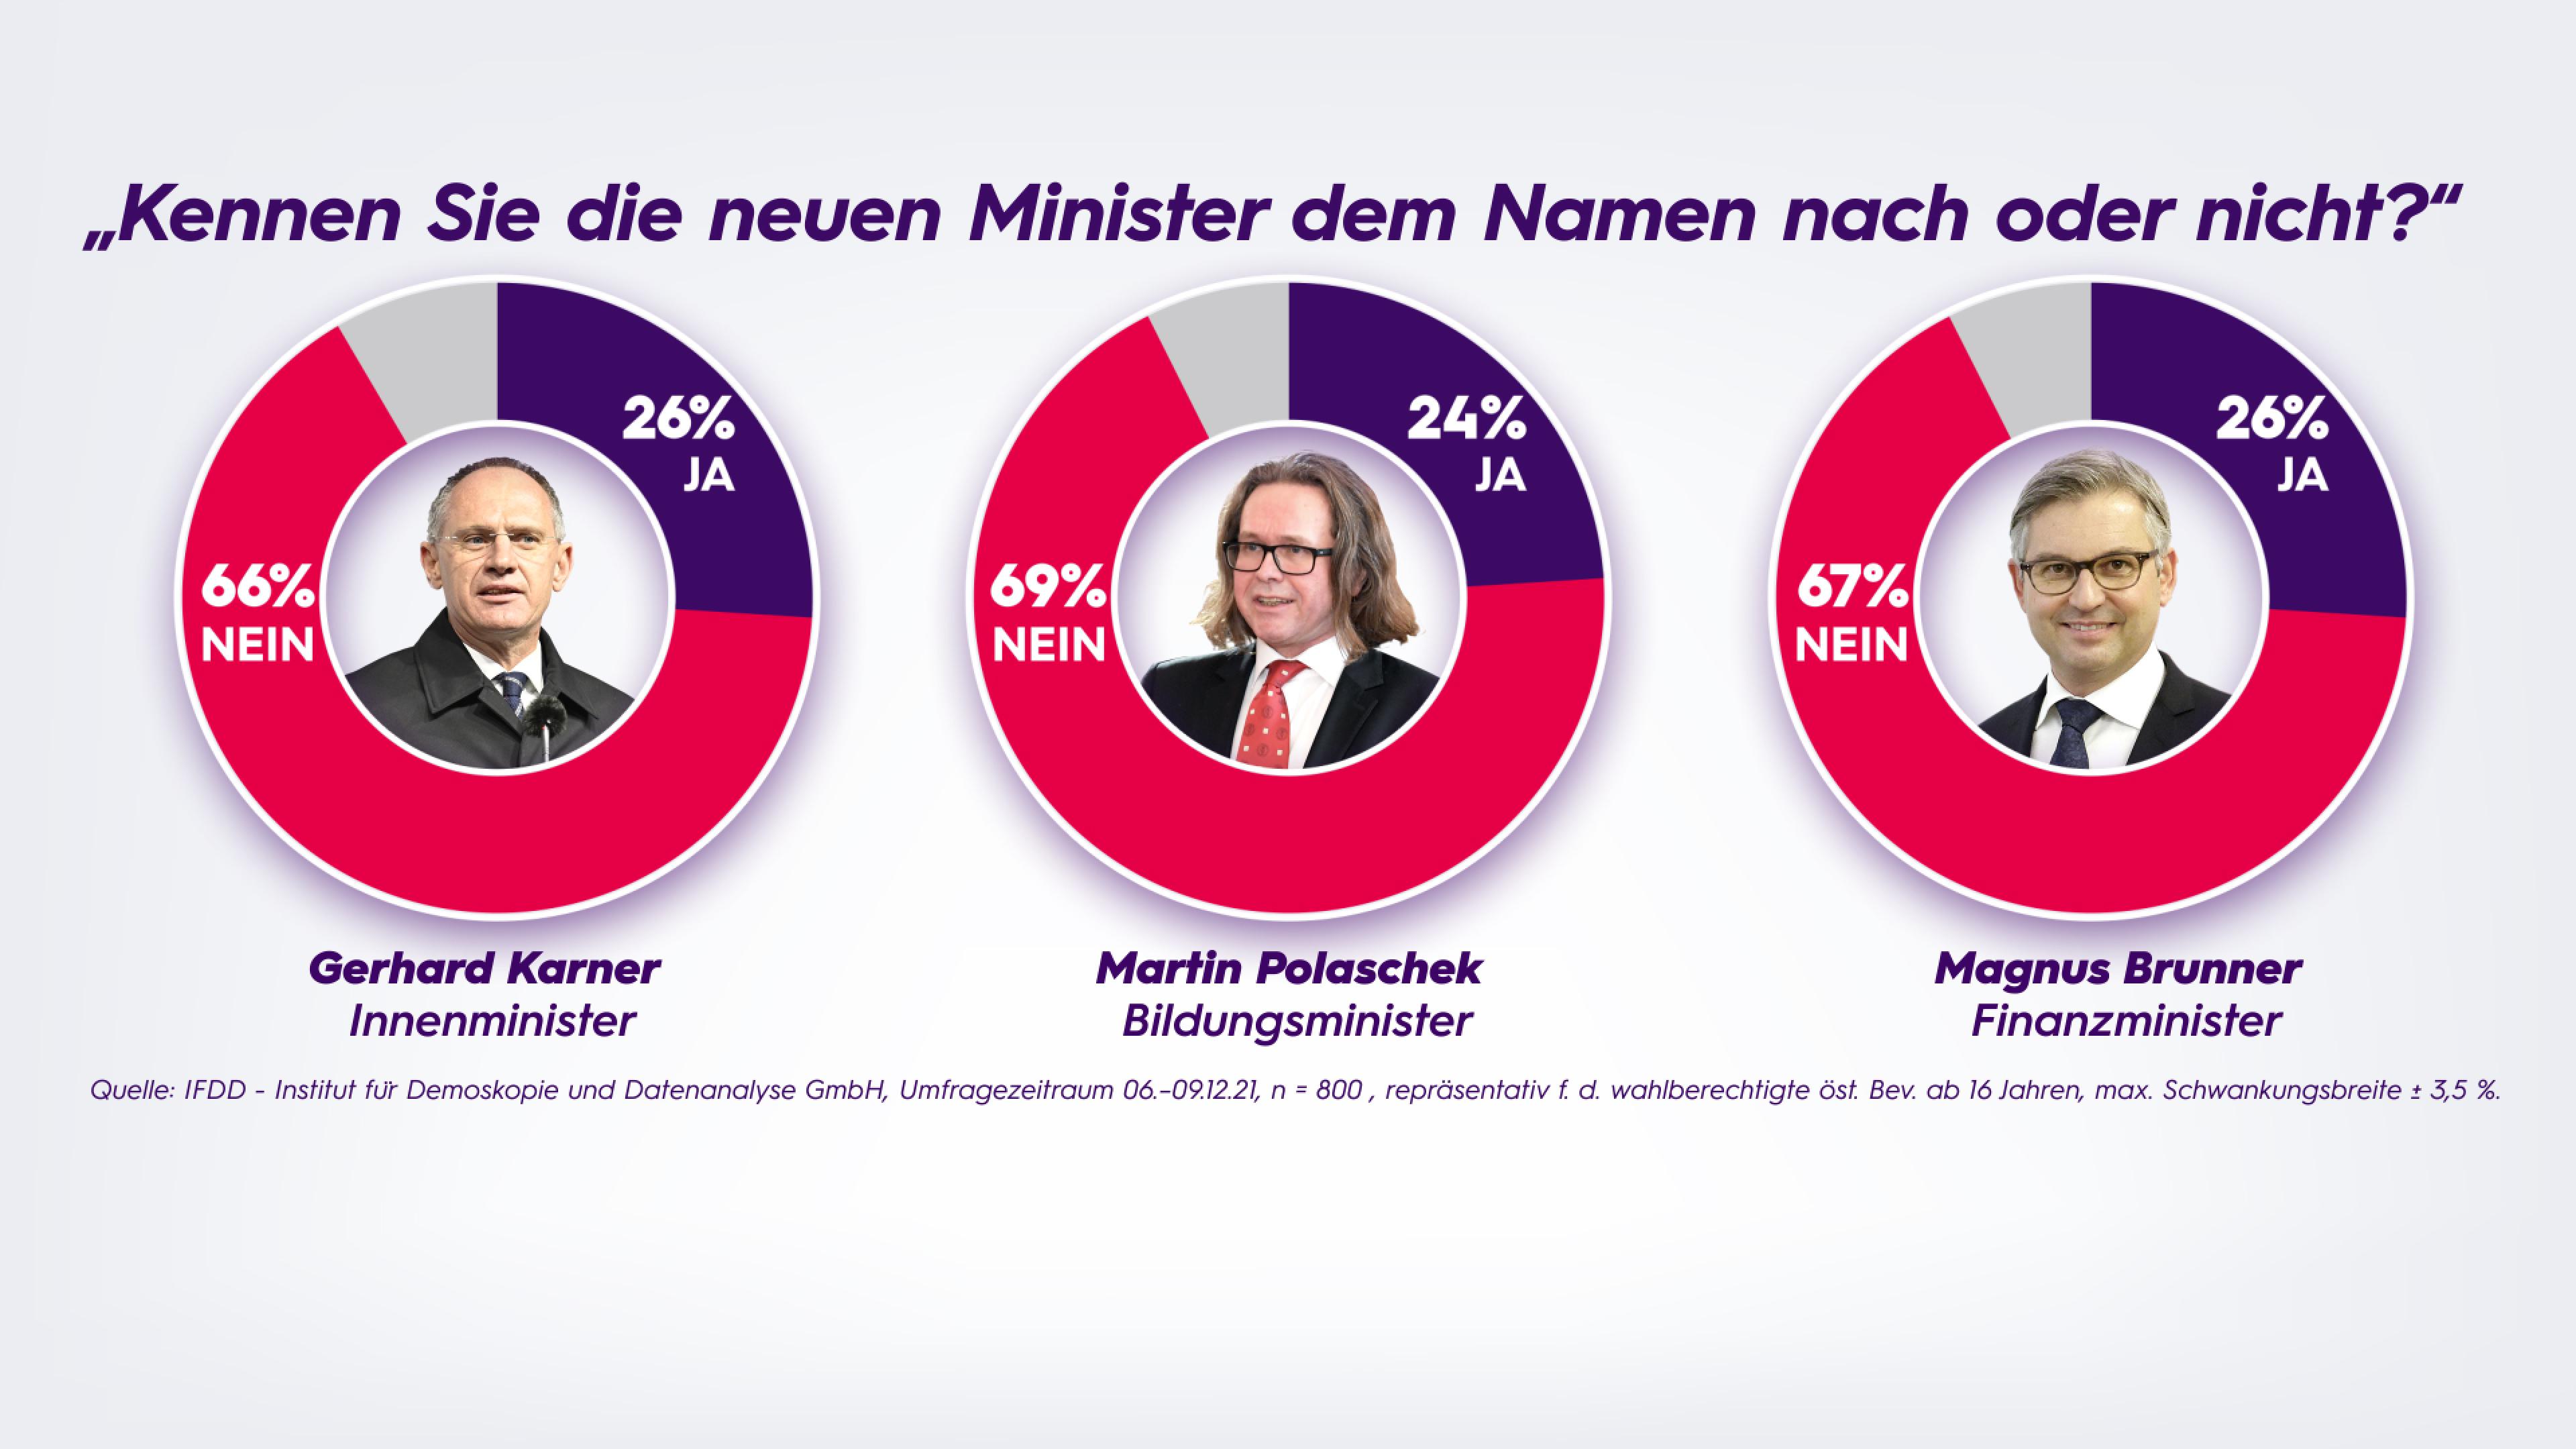 Umfrage: "Kennen Sie die neuen Minister dem Namen nach oder nicht?"